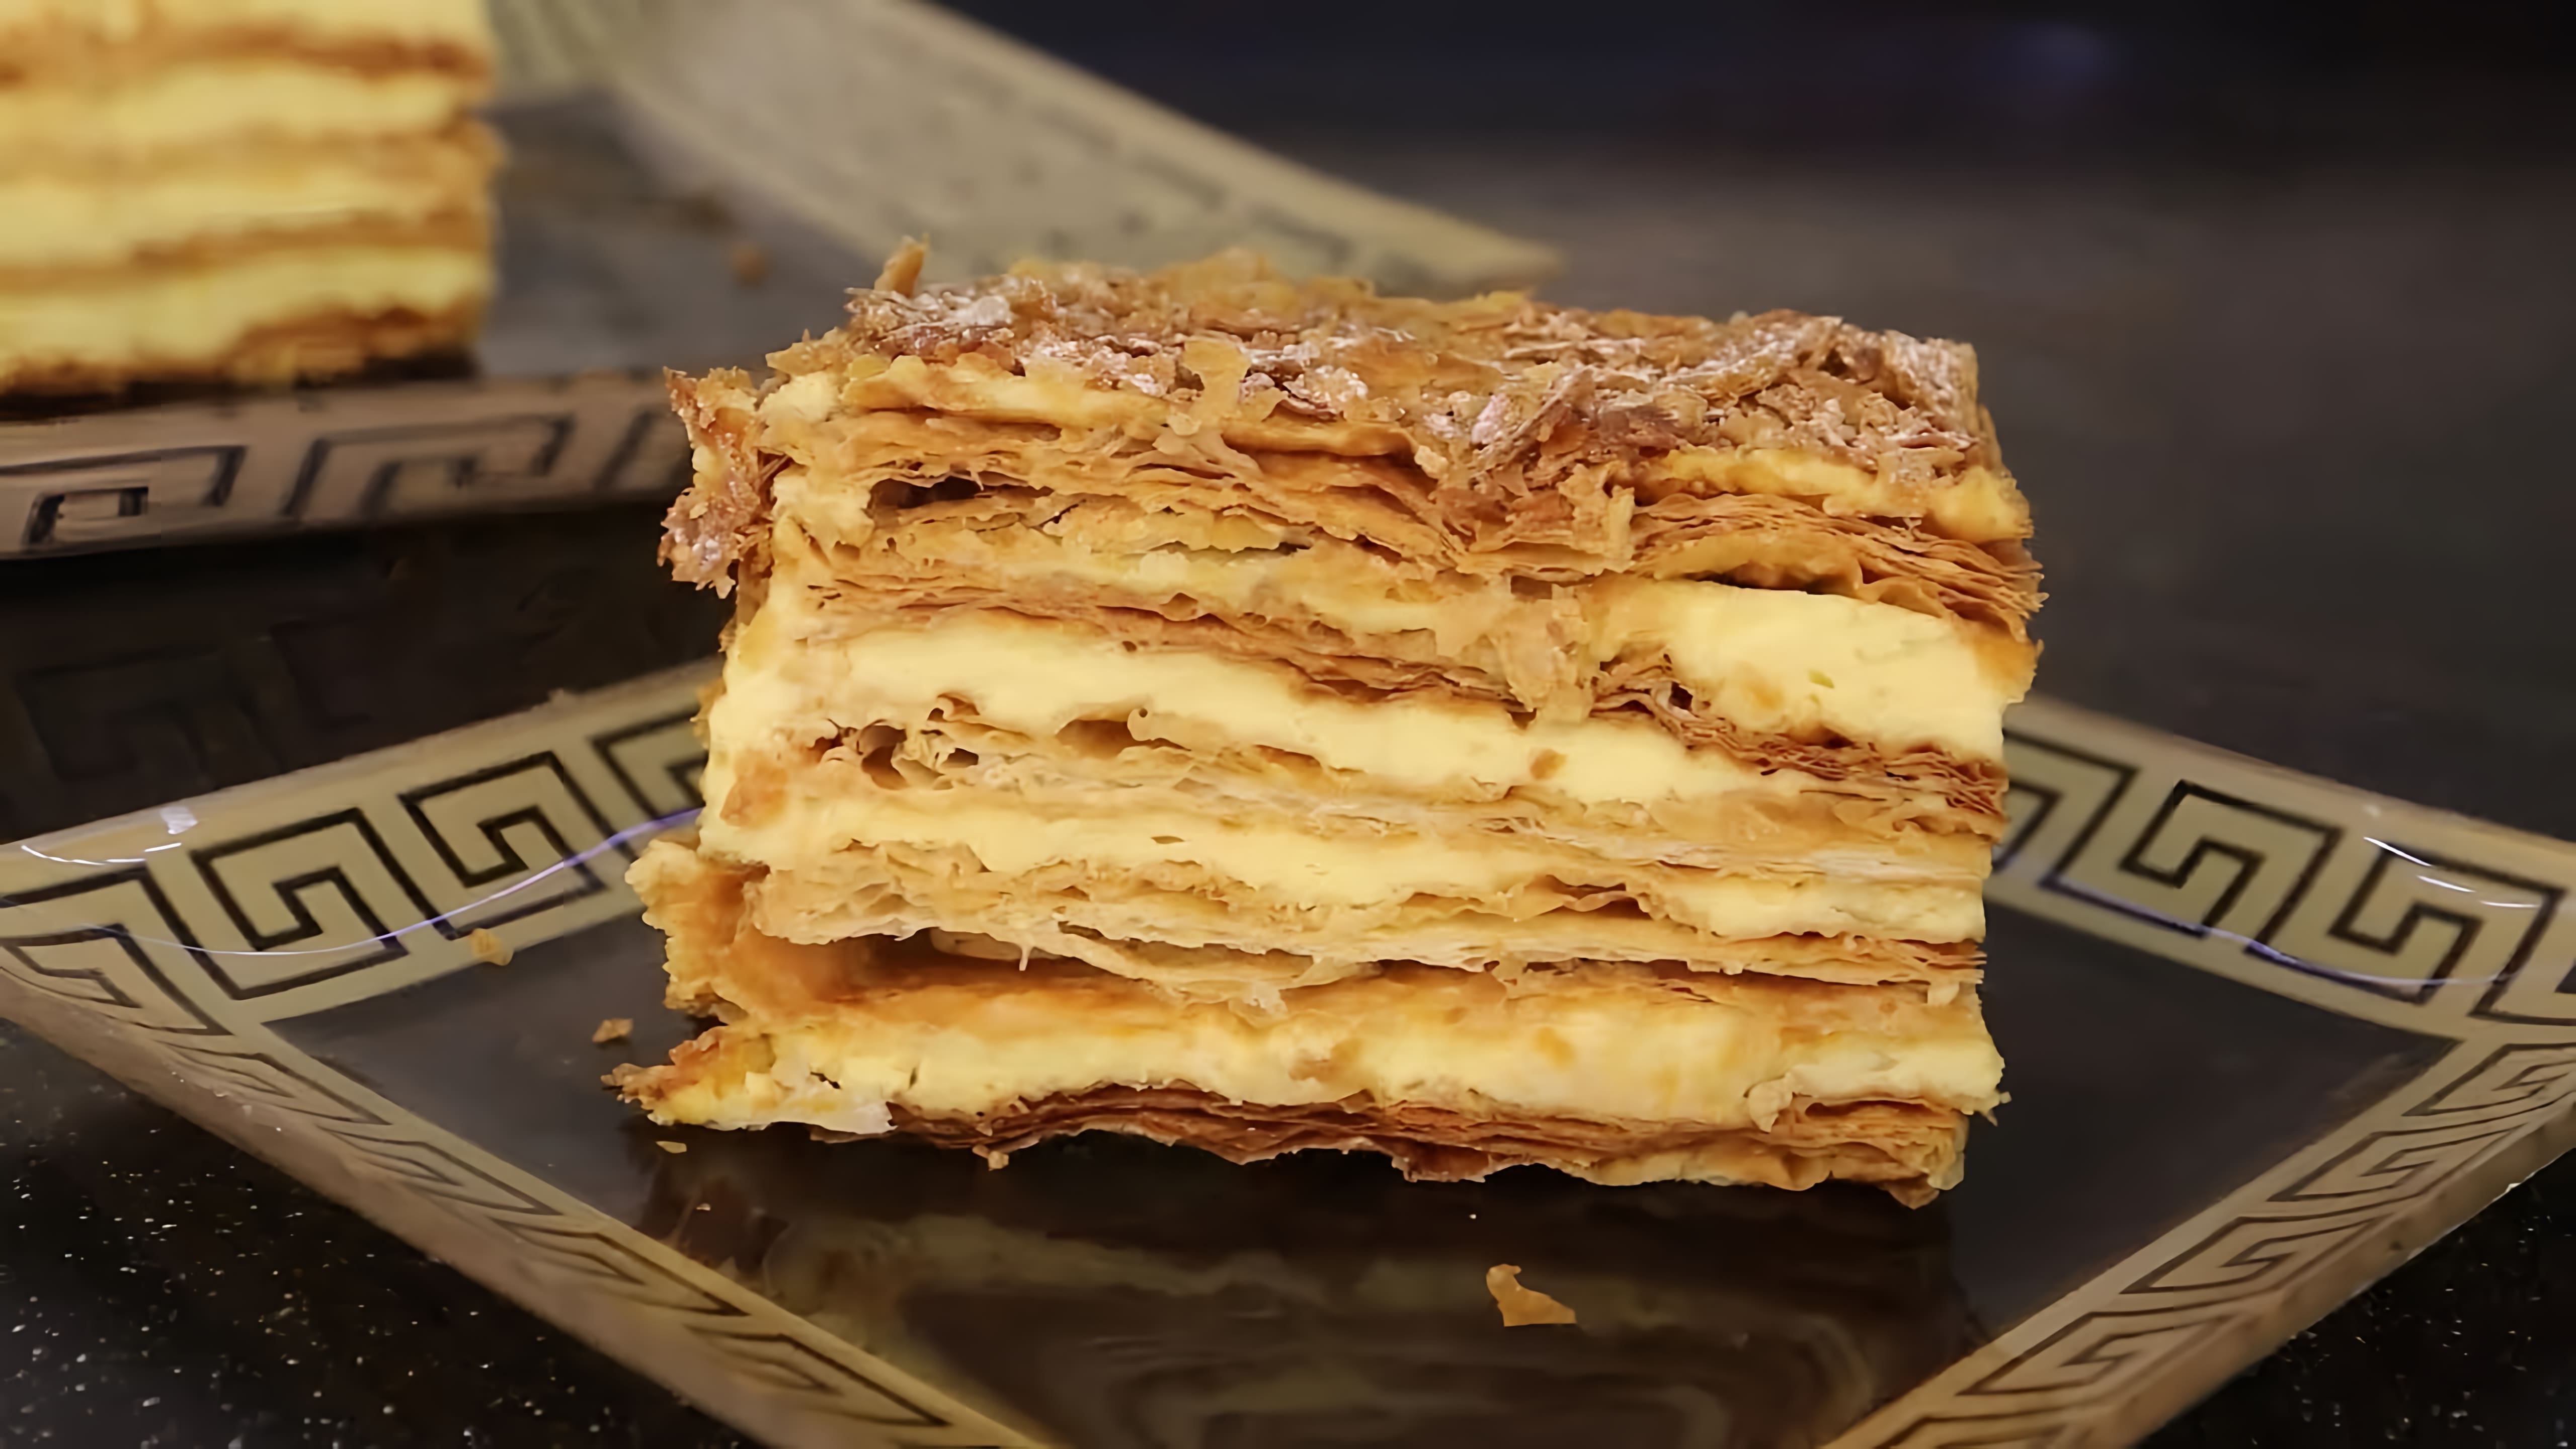 В этом видео демонстрируется рецепт приготовления торта "Наполеон"